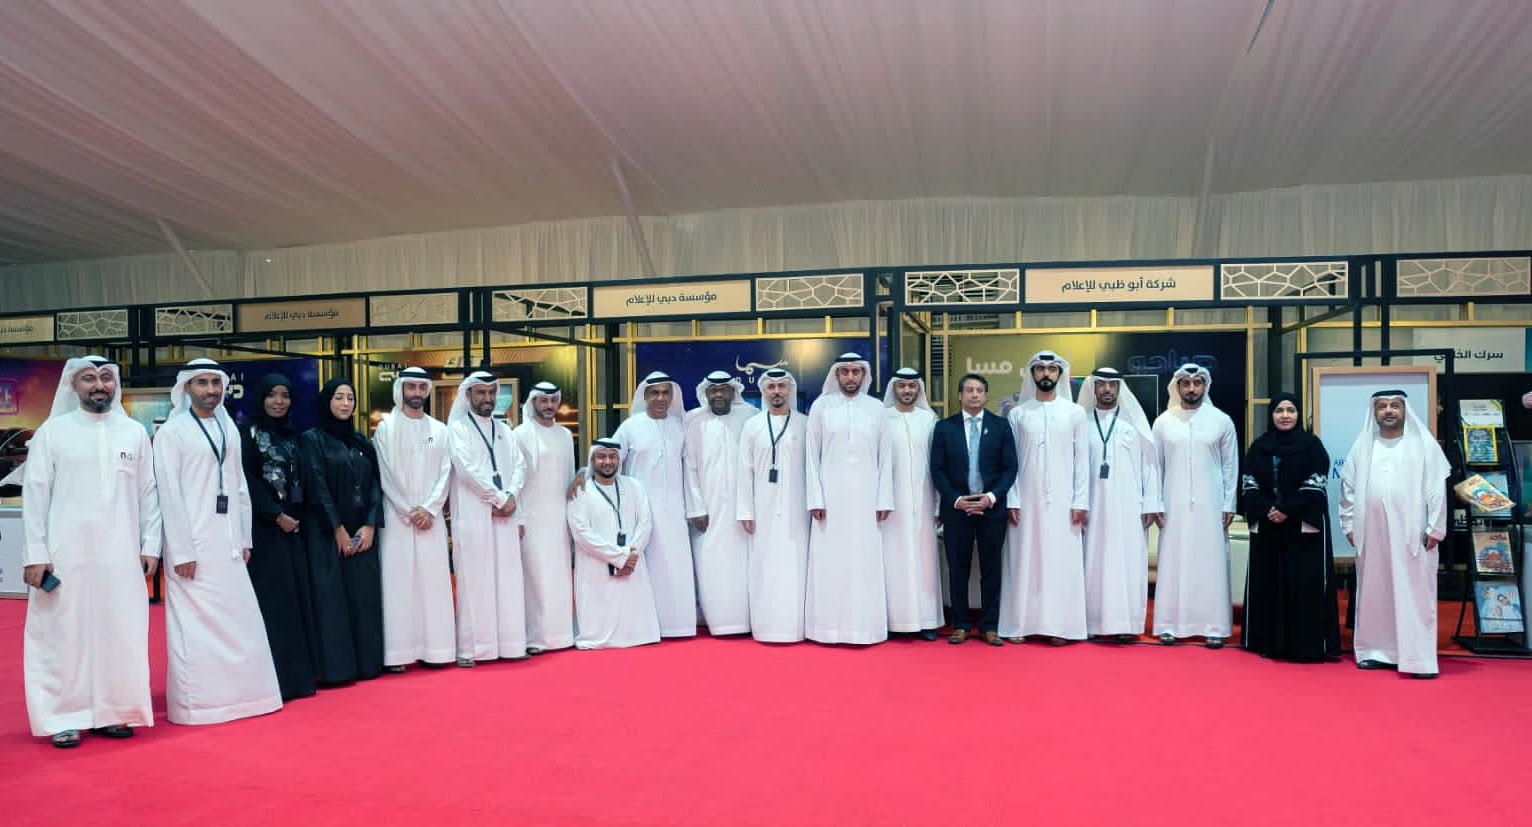 تنظيم الإعلام يرأس وفد الإمارات في مهرجان الخليج بالبحرين  culture